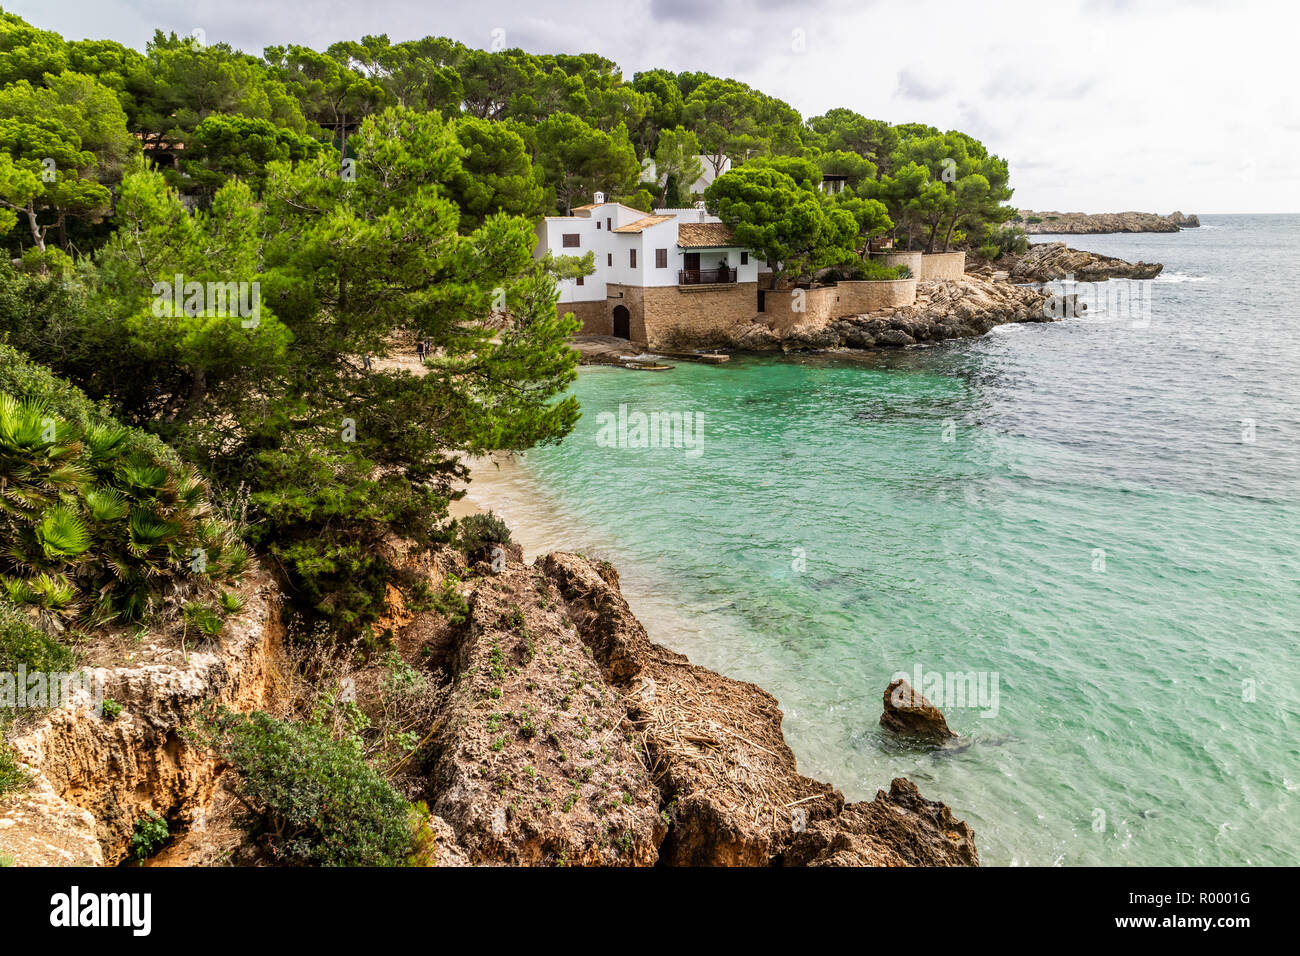 Cala Gat, beach and bay in Cala Rajada, Capdepera, Mallorca, Balearic Islands, Spain Stock Photo